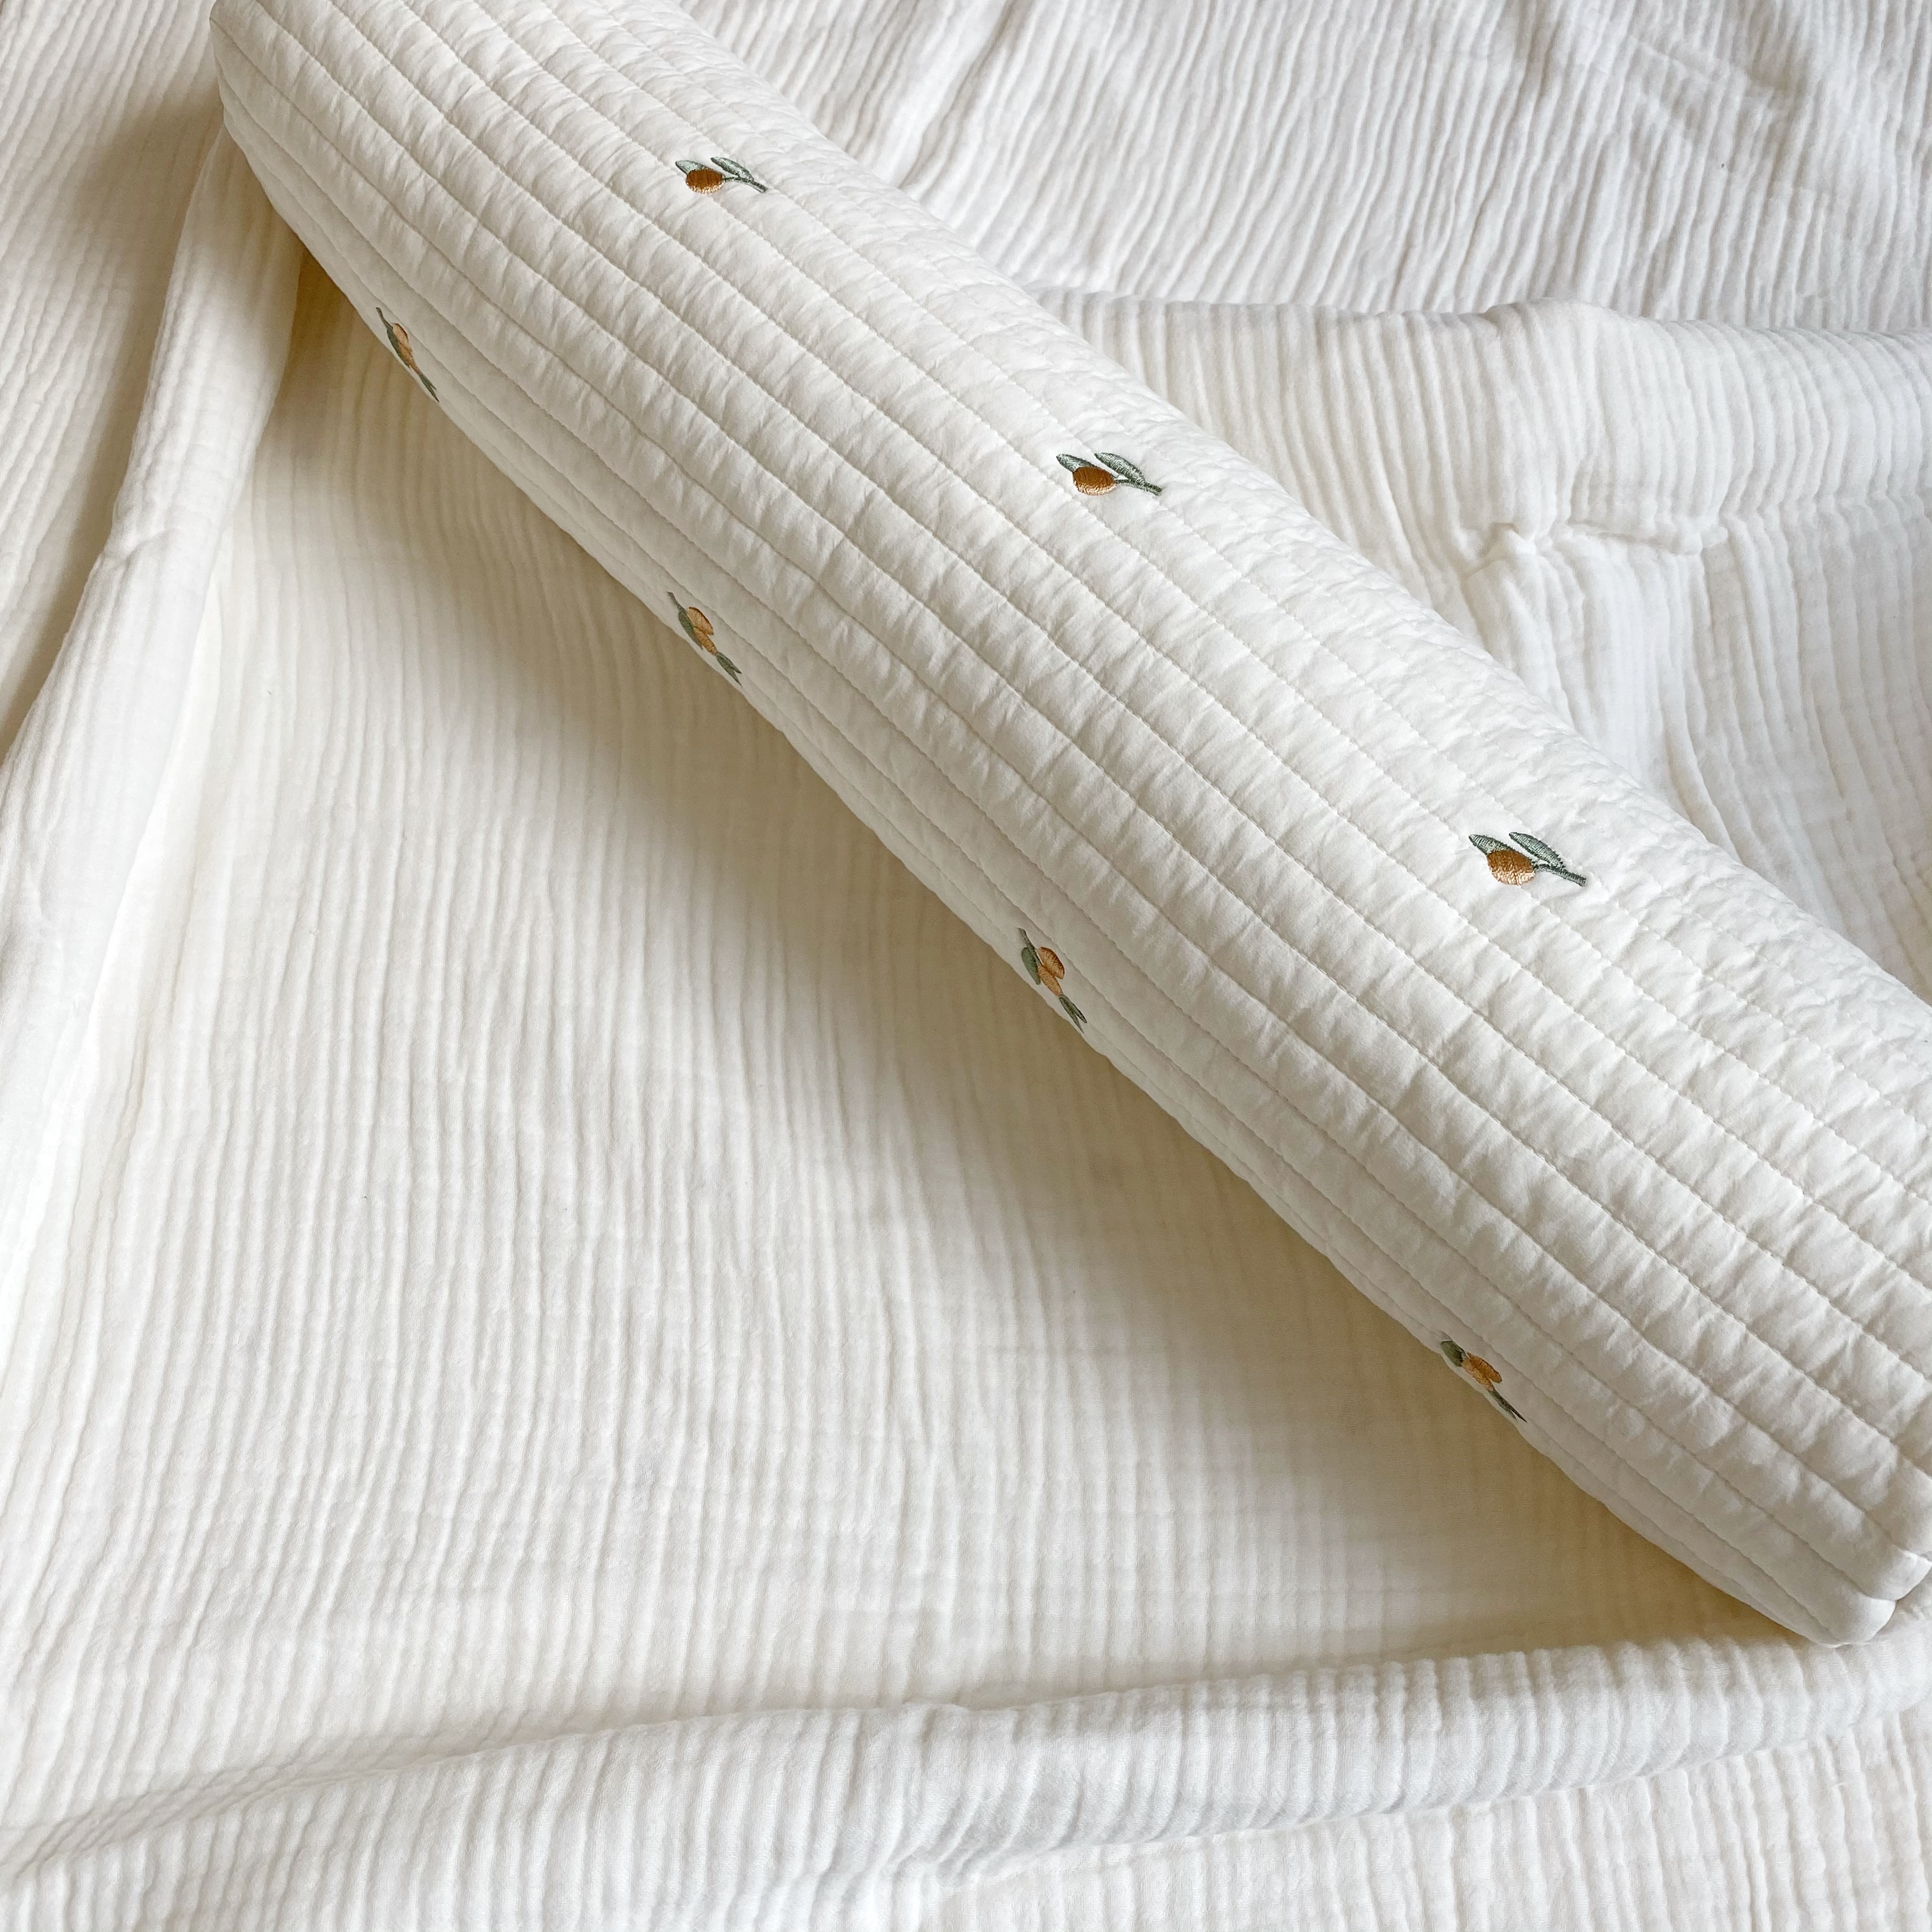 寝返り防止クッションとしても使えるオリーブ刺繍baby body pillow